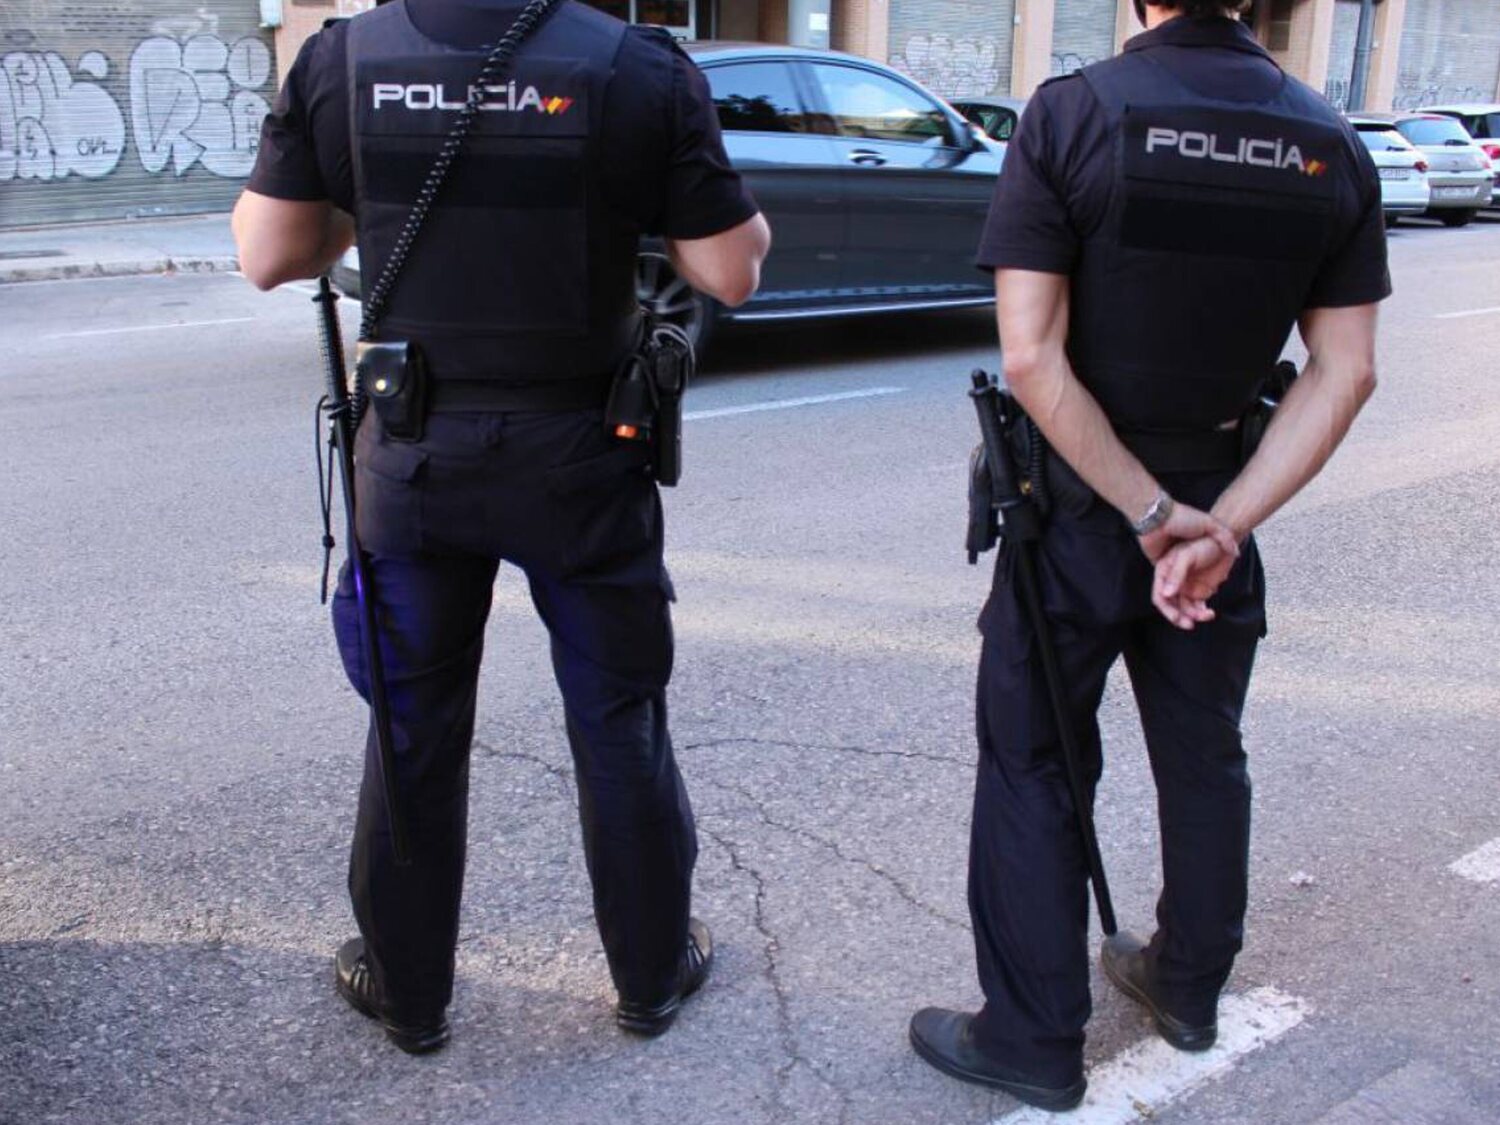 Prisión a un policía de Madrid por propinar puñetazos, patadas y golpes a un detenido: "A los moros, solo agua"